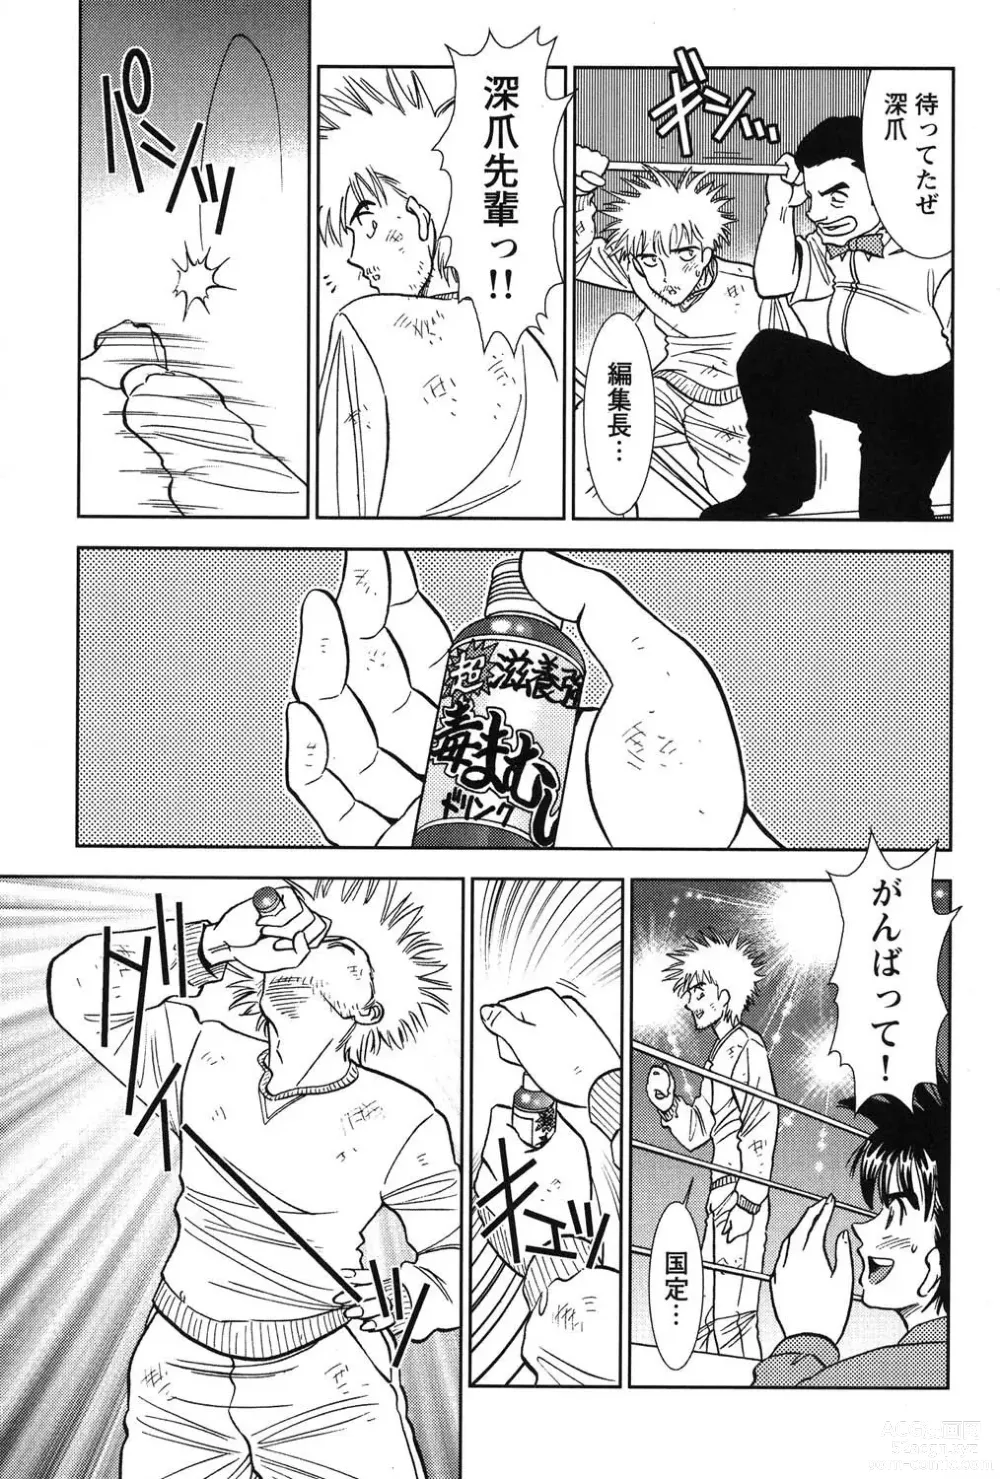 Page 222 of manga Bambina Oiroke  Battle  Hen